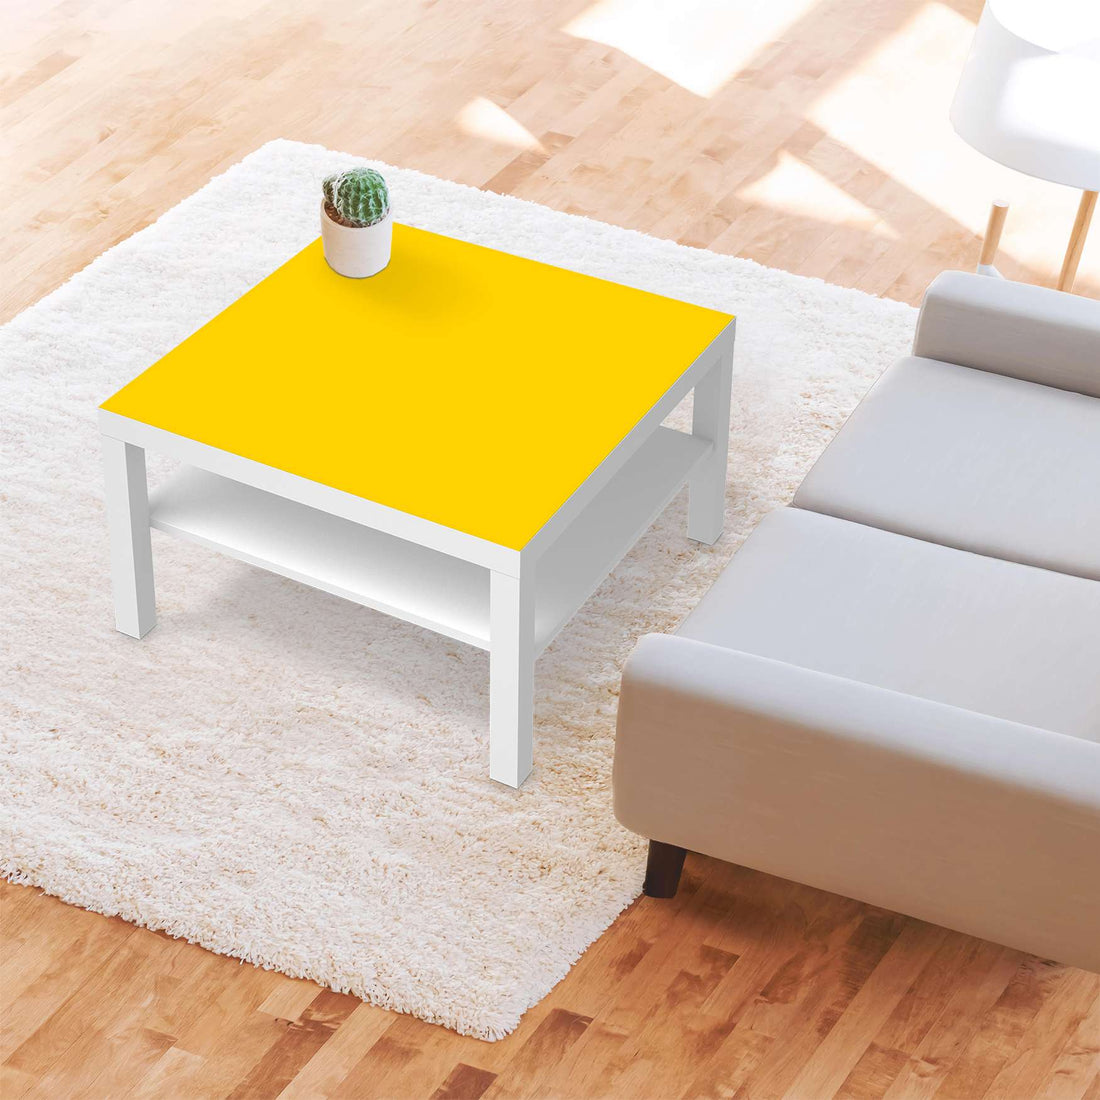 Selbstklebende Folie Gelb Dark - IKEA Lack Tisch 78x78 cm - Wohnzimmer